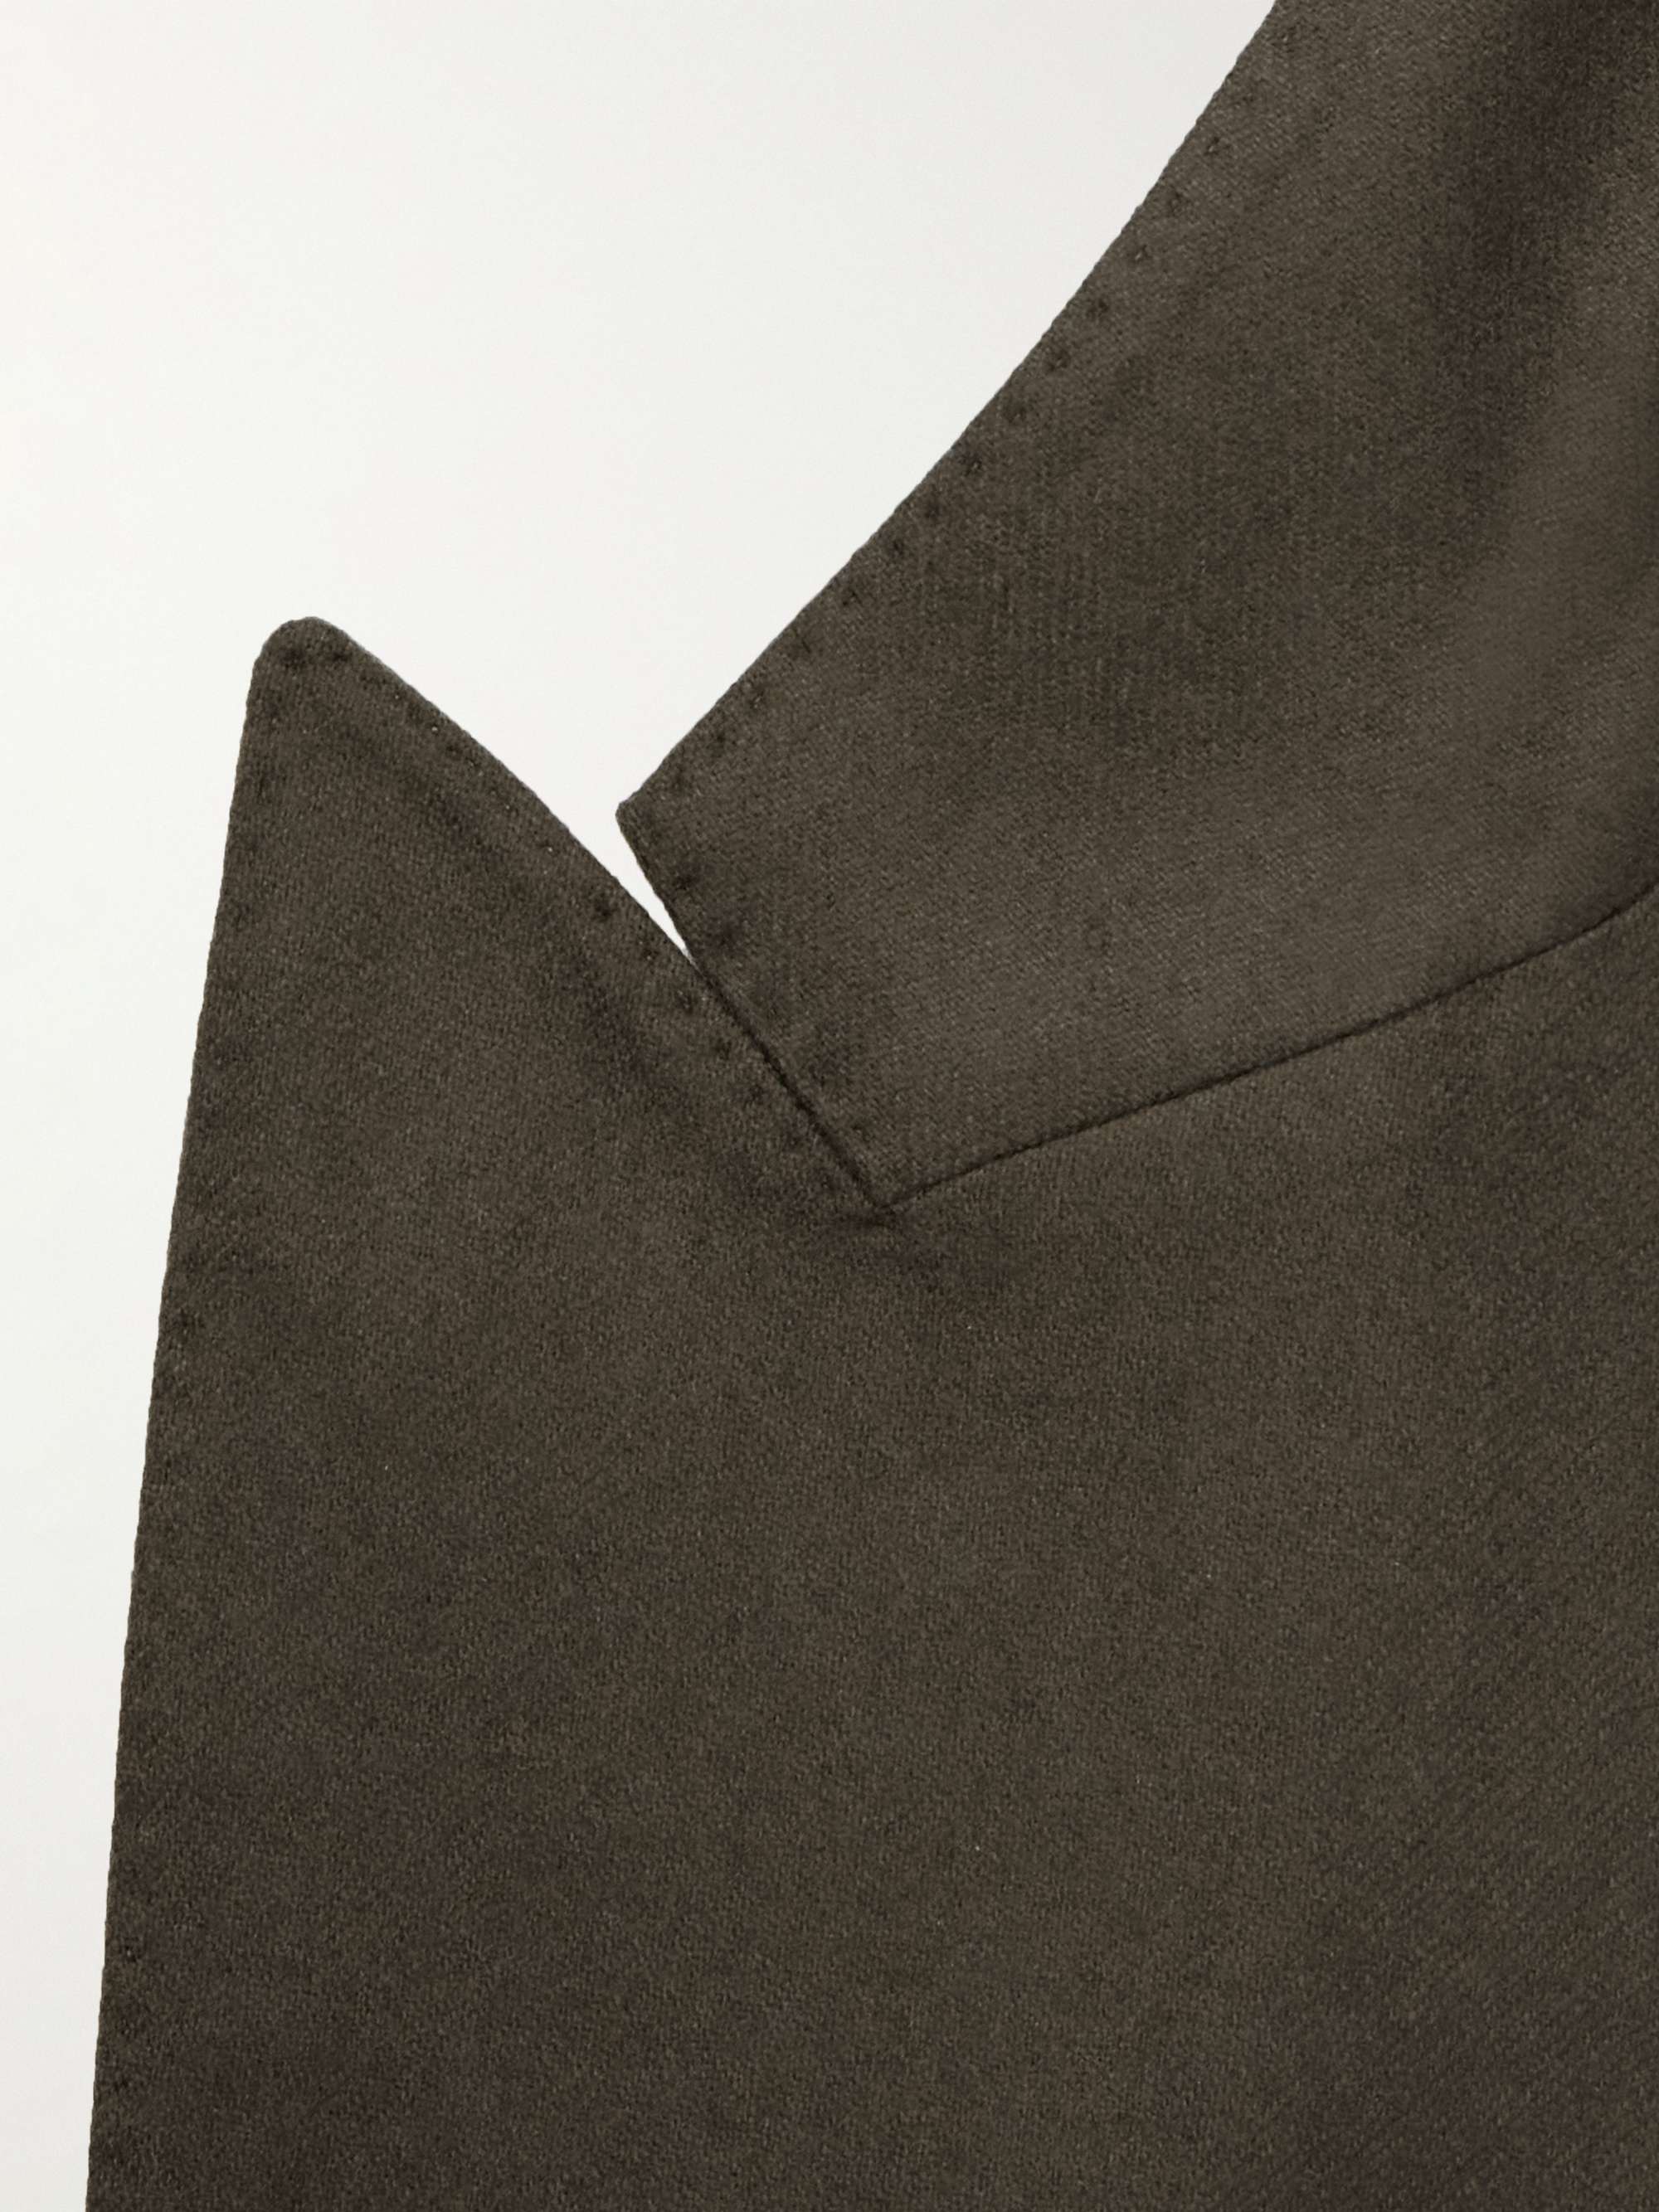 MASSIMO ALBA Monster Double-Breasted Wool Blazer for Men | MR PORTER